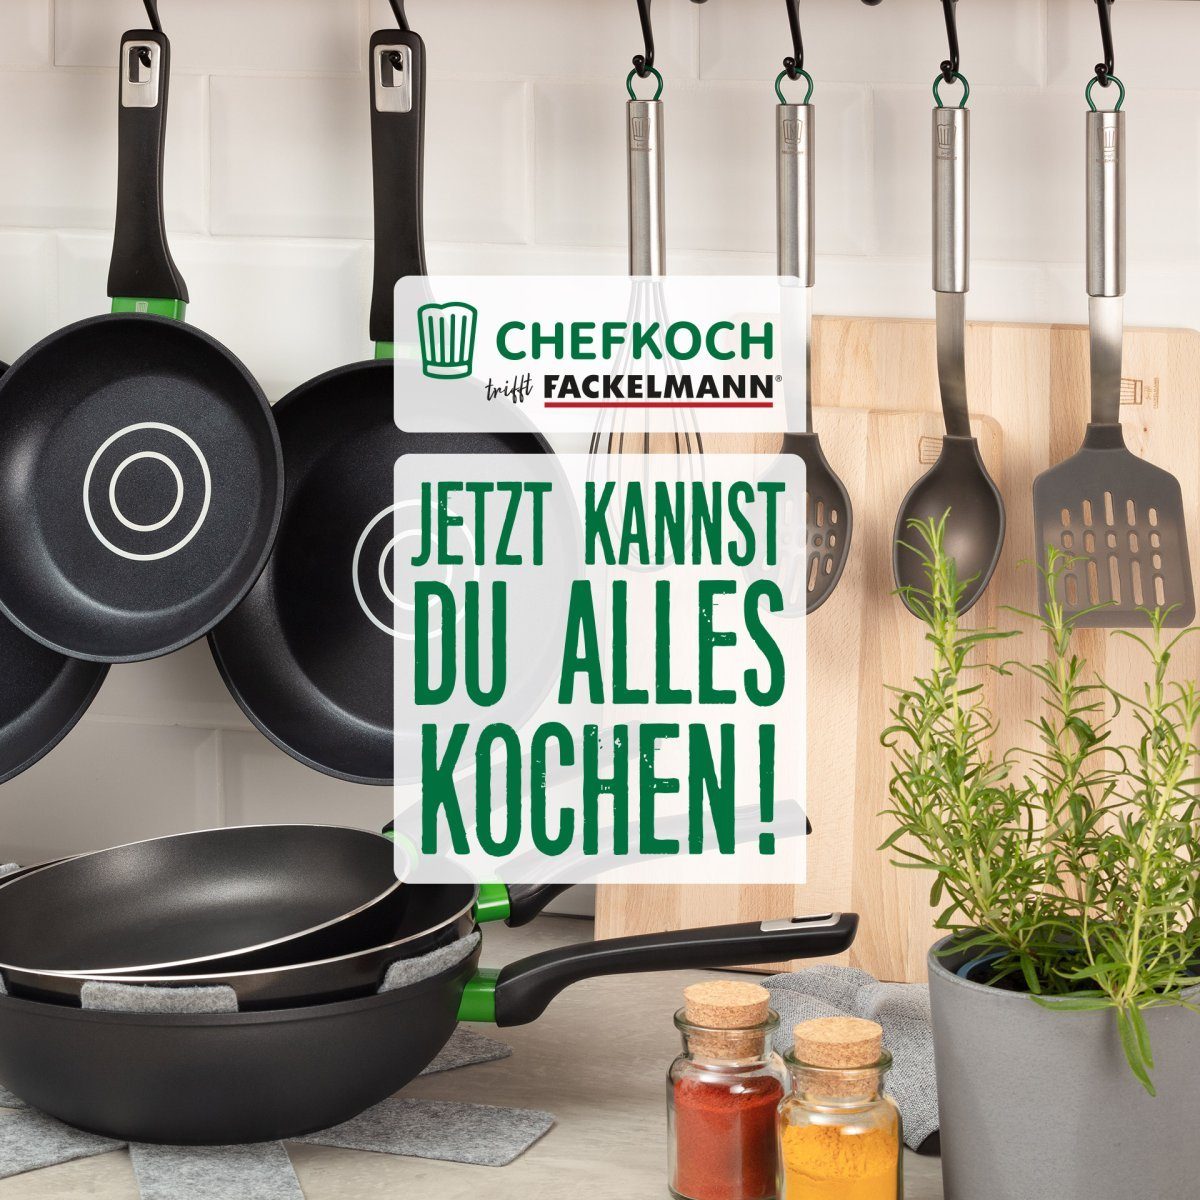 München Chefkoch Fackelmann trifft Kochbesteck-Set